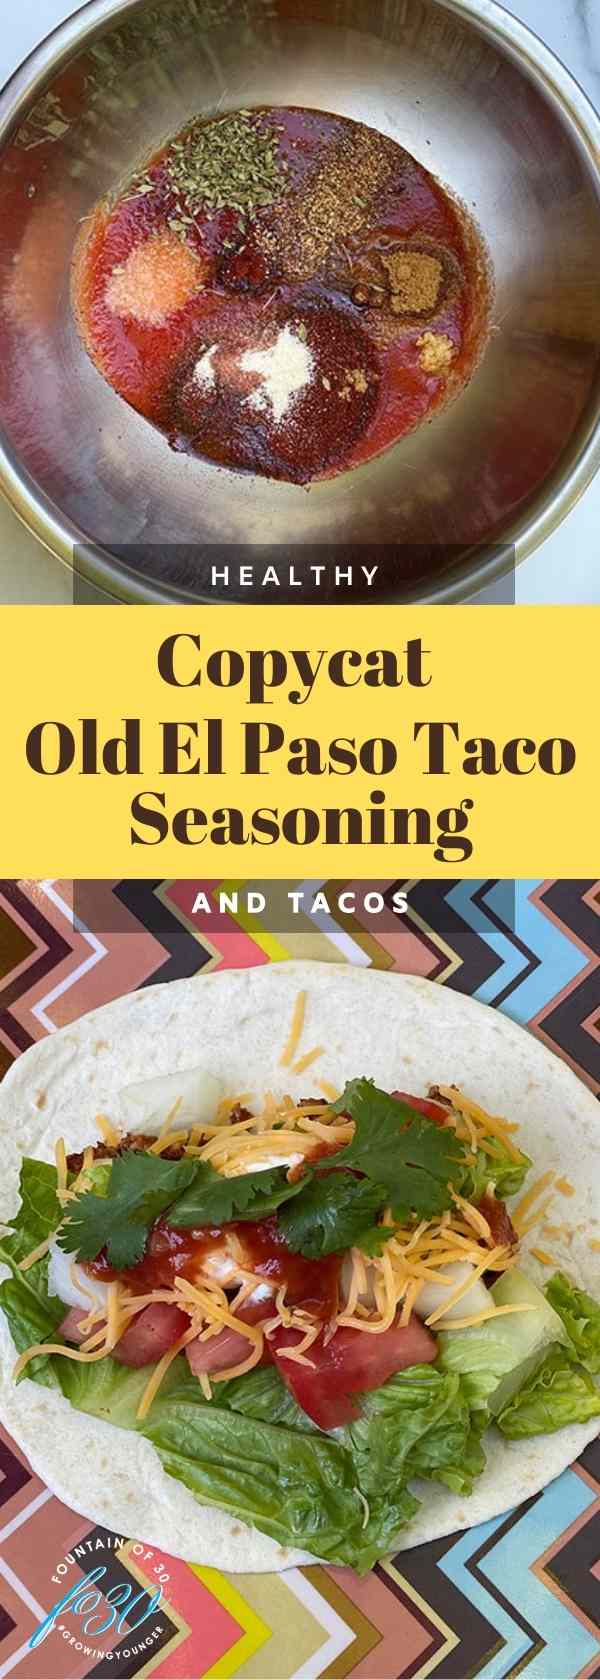 Old El Paso Copycat Seasoning and Tacos fountainof30